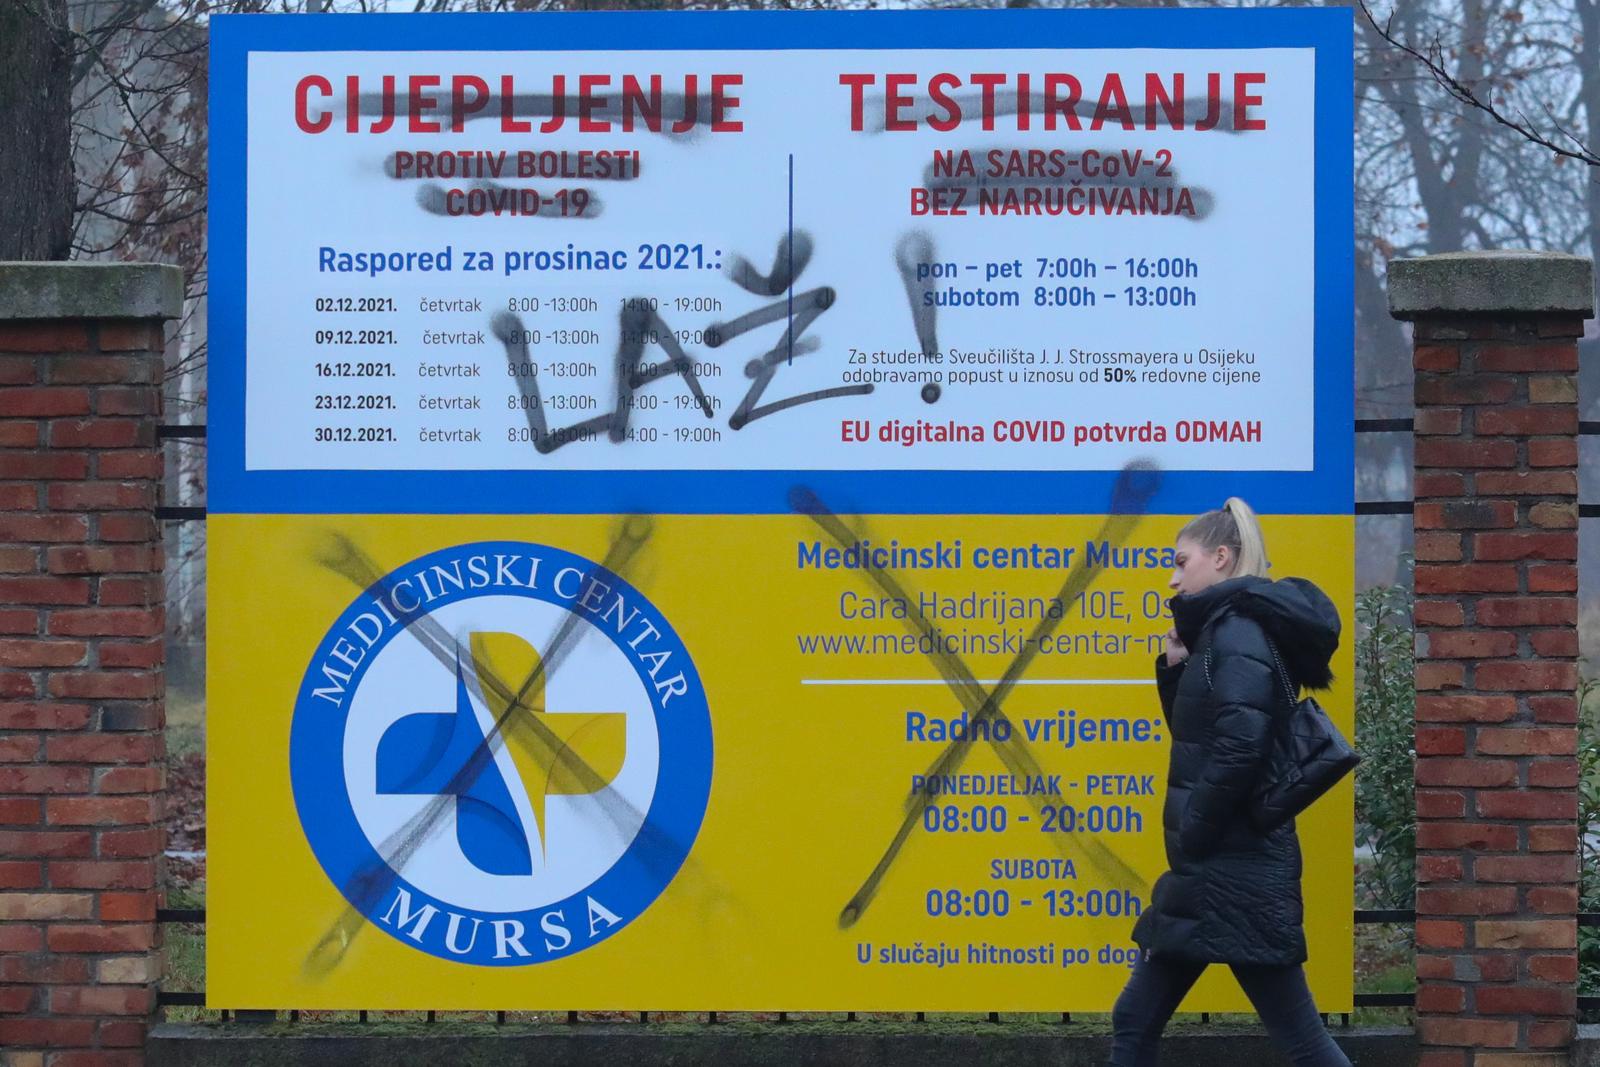 15.12.2021., Osijek - Nasuprot ulaza u KBC Osijek a uz mjesto testiranja na COVID-19, presaran je plakat koji upucuje gradjane o mjestu i vremenu cijepljenja i testiranja. Photo: Dubravka Petric/PIXSELL